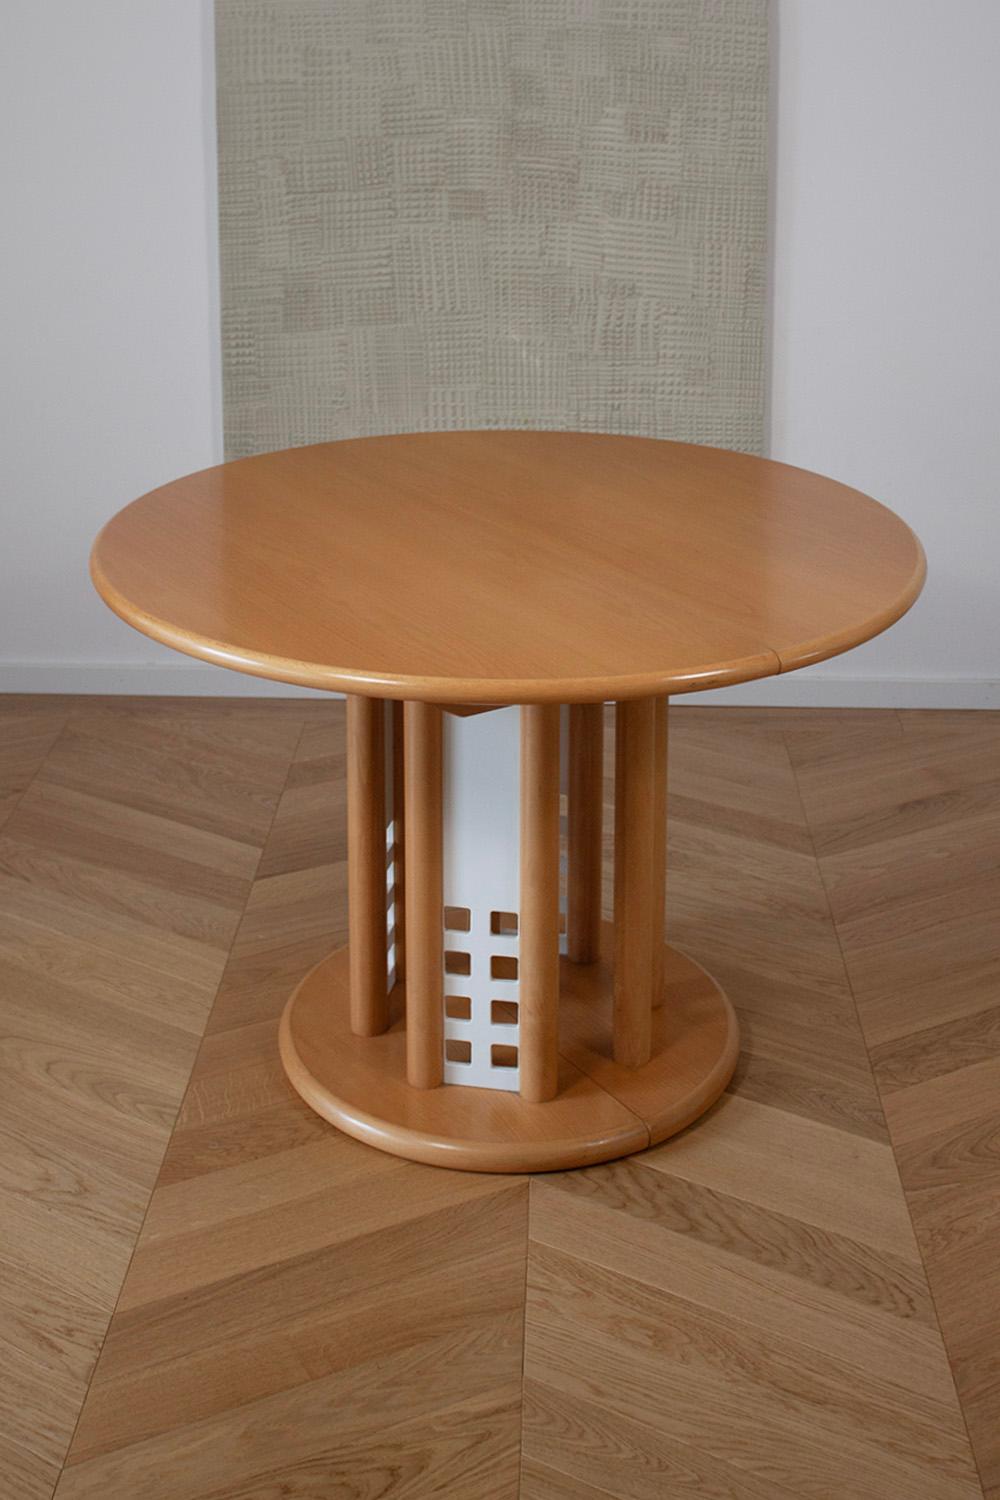 Dieser sehr seltene ausziehbare Thonet-Tisch ist ein klassisches Design von 1990. Der Tisch ist aus Buchenholz gefertigt und hat 4 interessante weiße Metallplatten an der Basis, die ihm den 90er-Jahre-Charakter verleihen. Die Tabelle ist in sehr